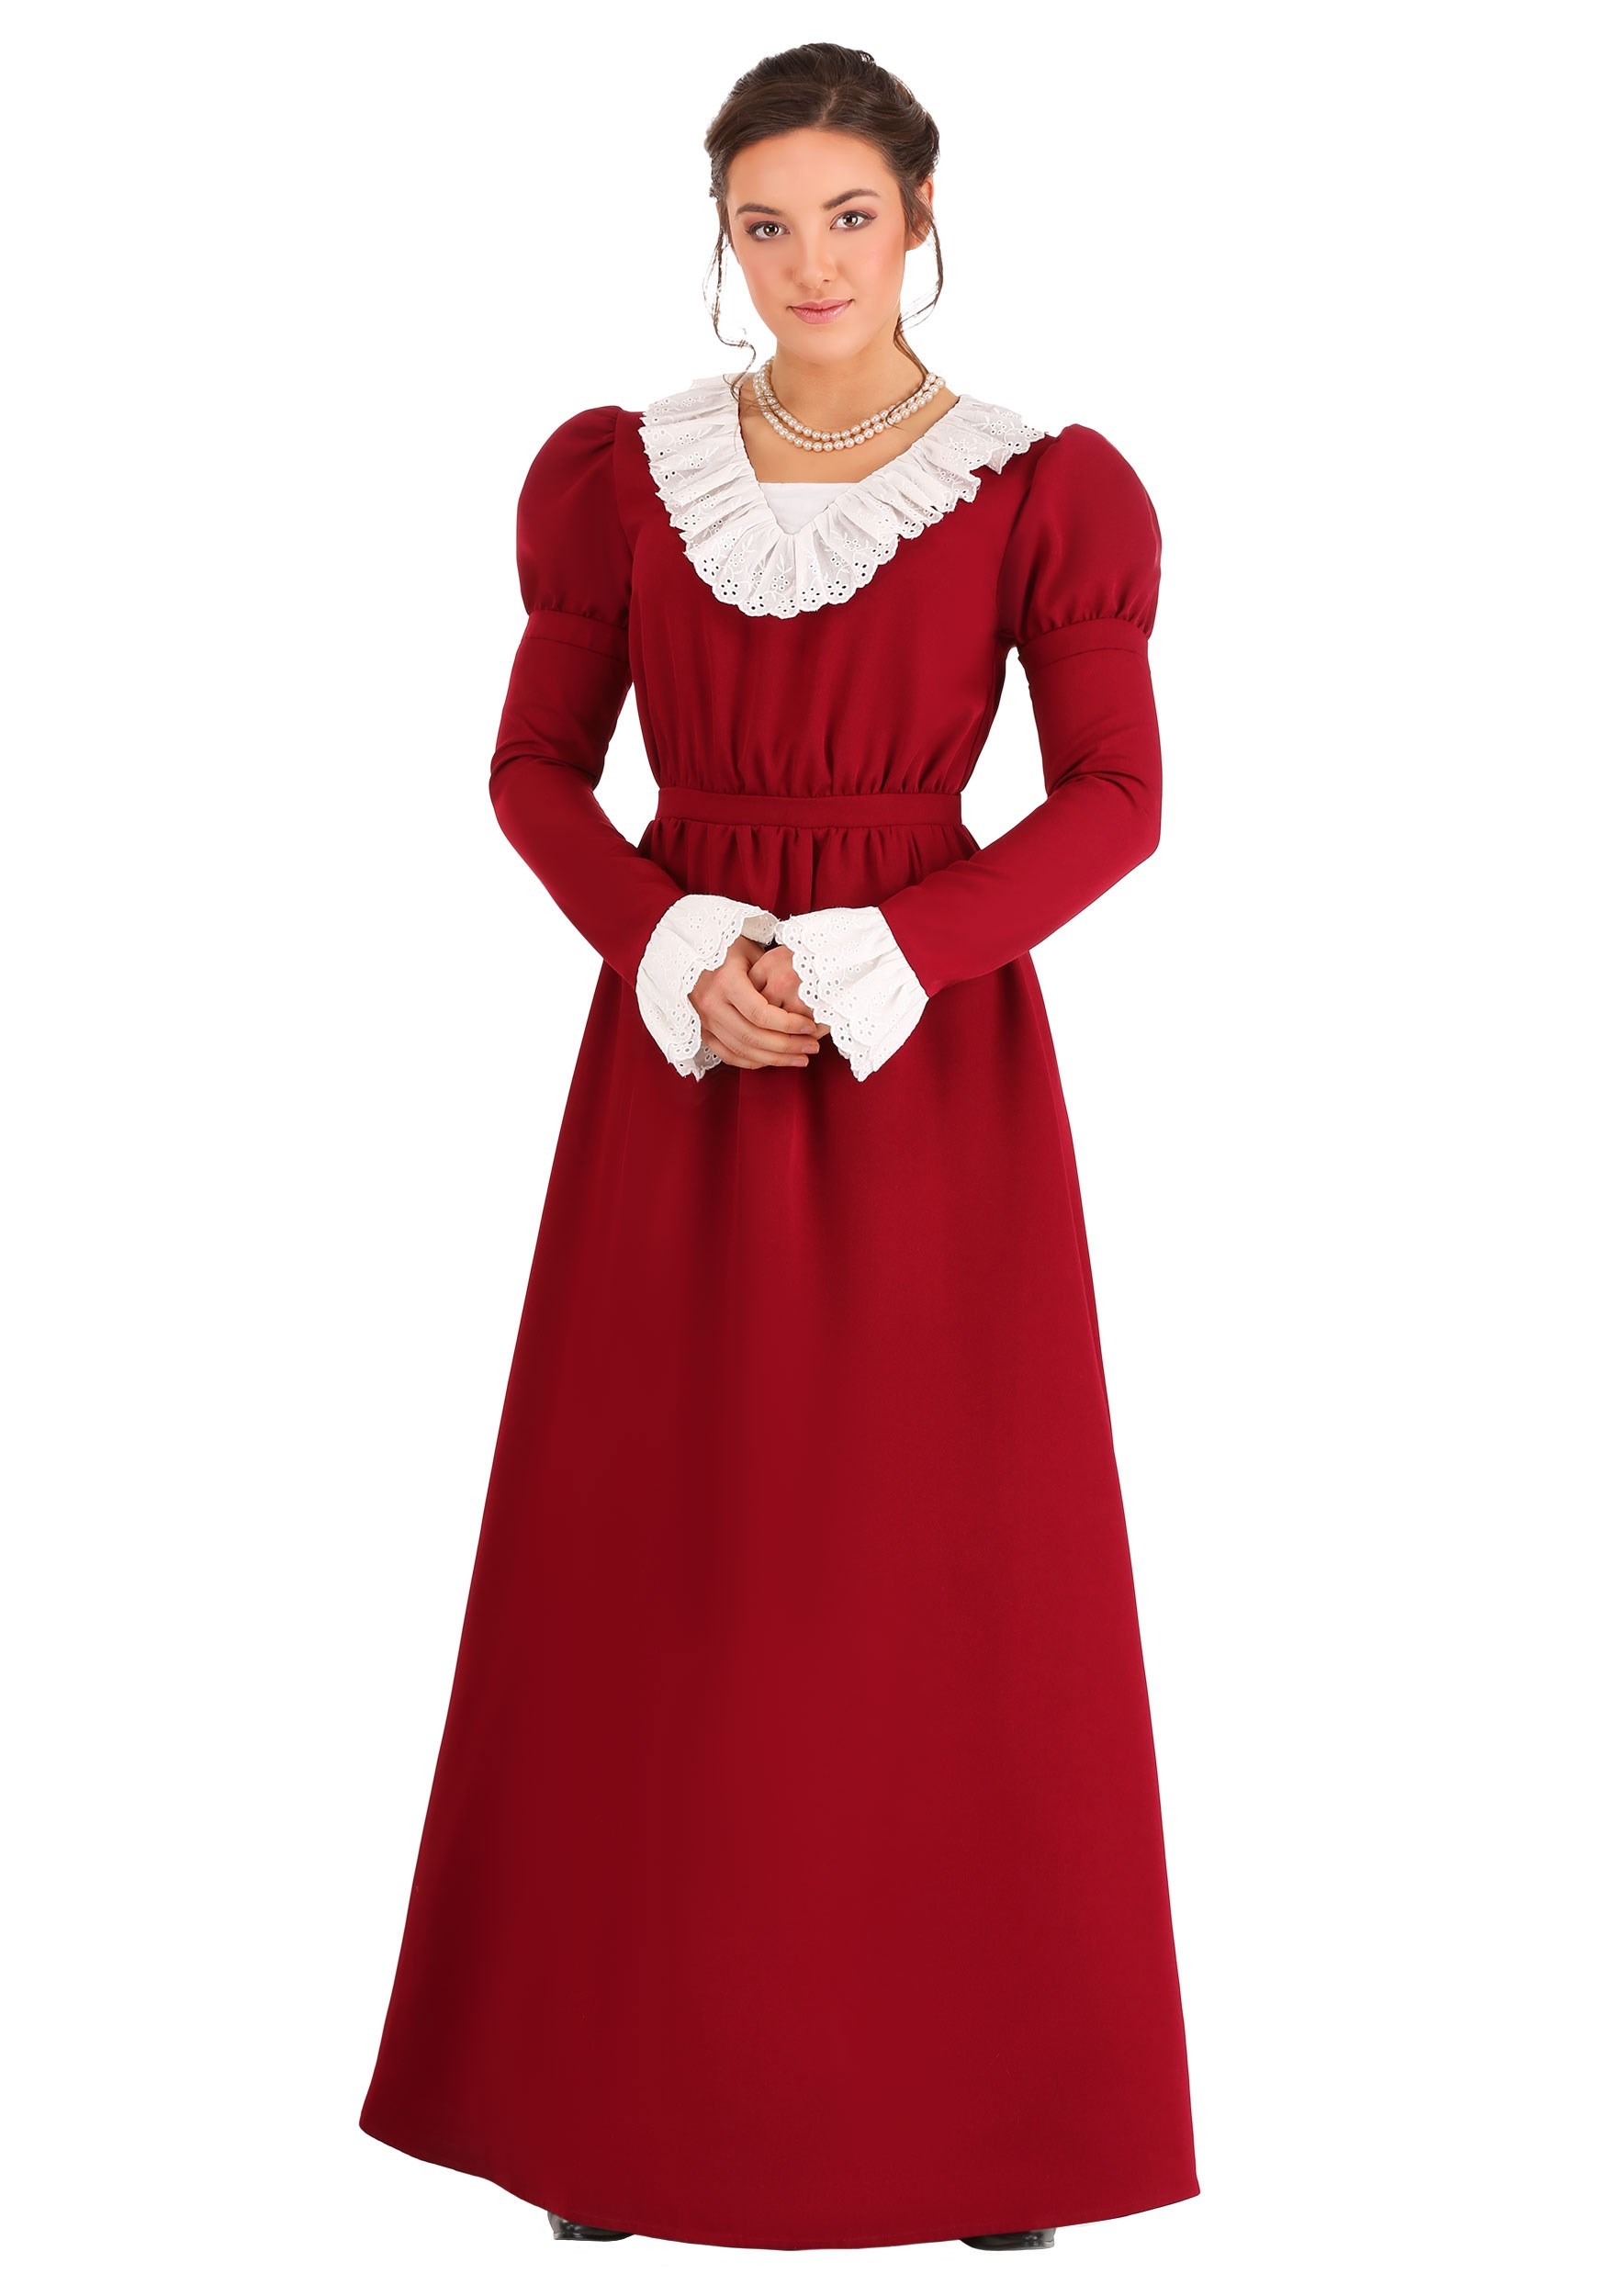 Women’s Abigail Adams Costume